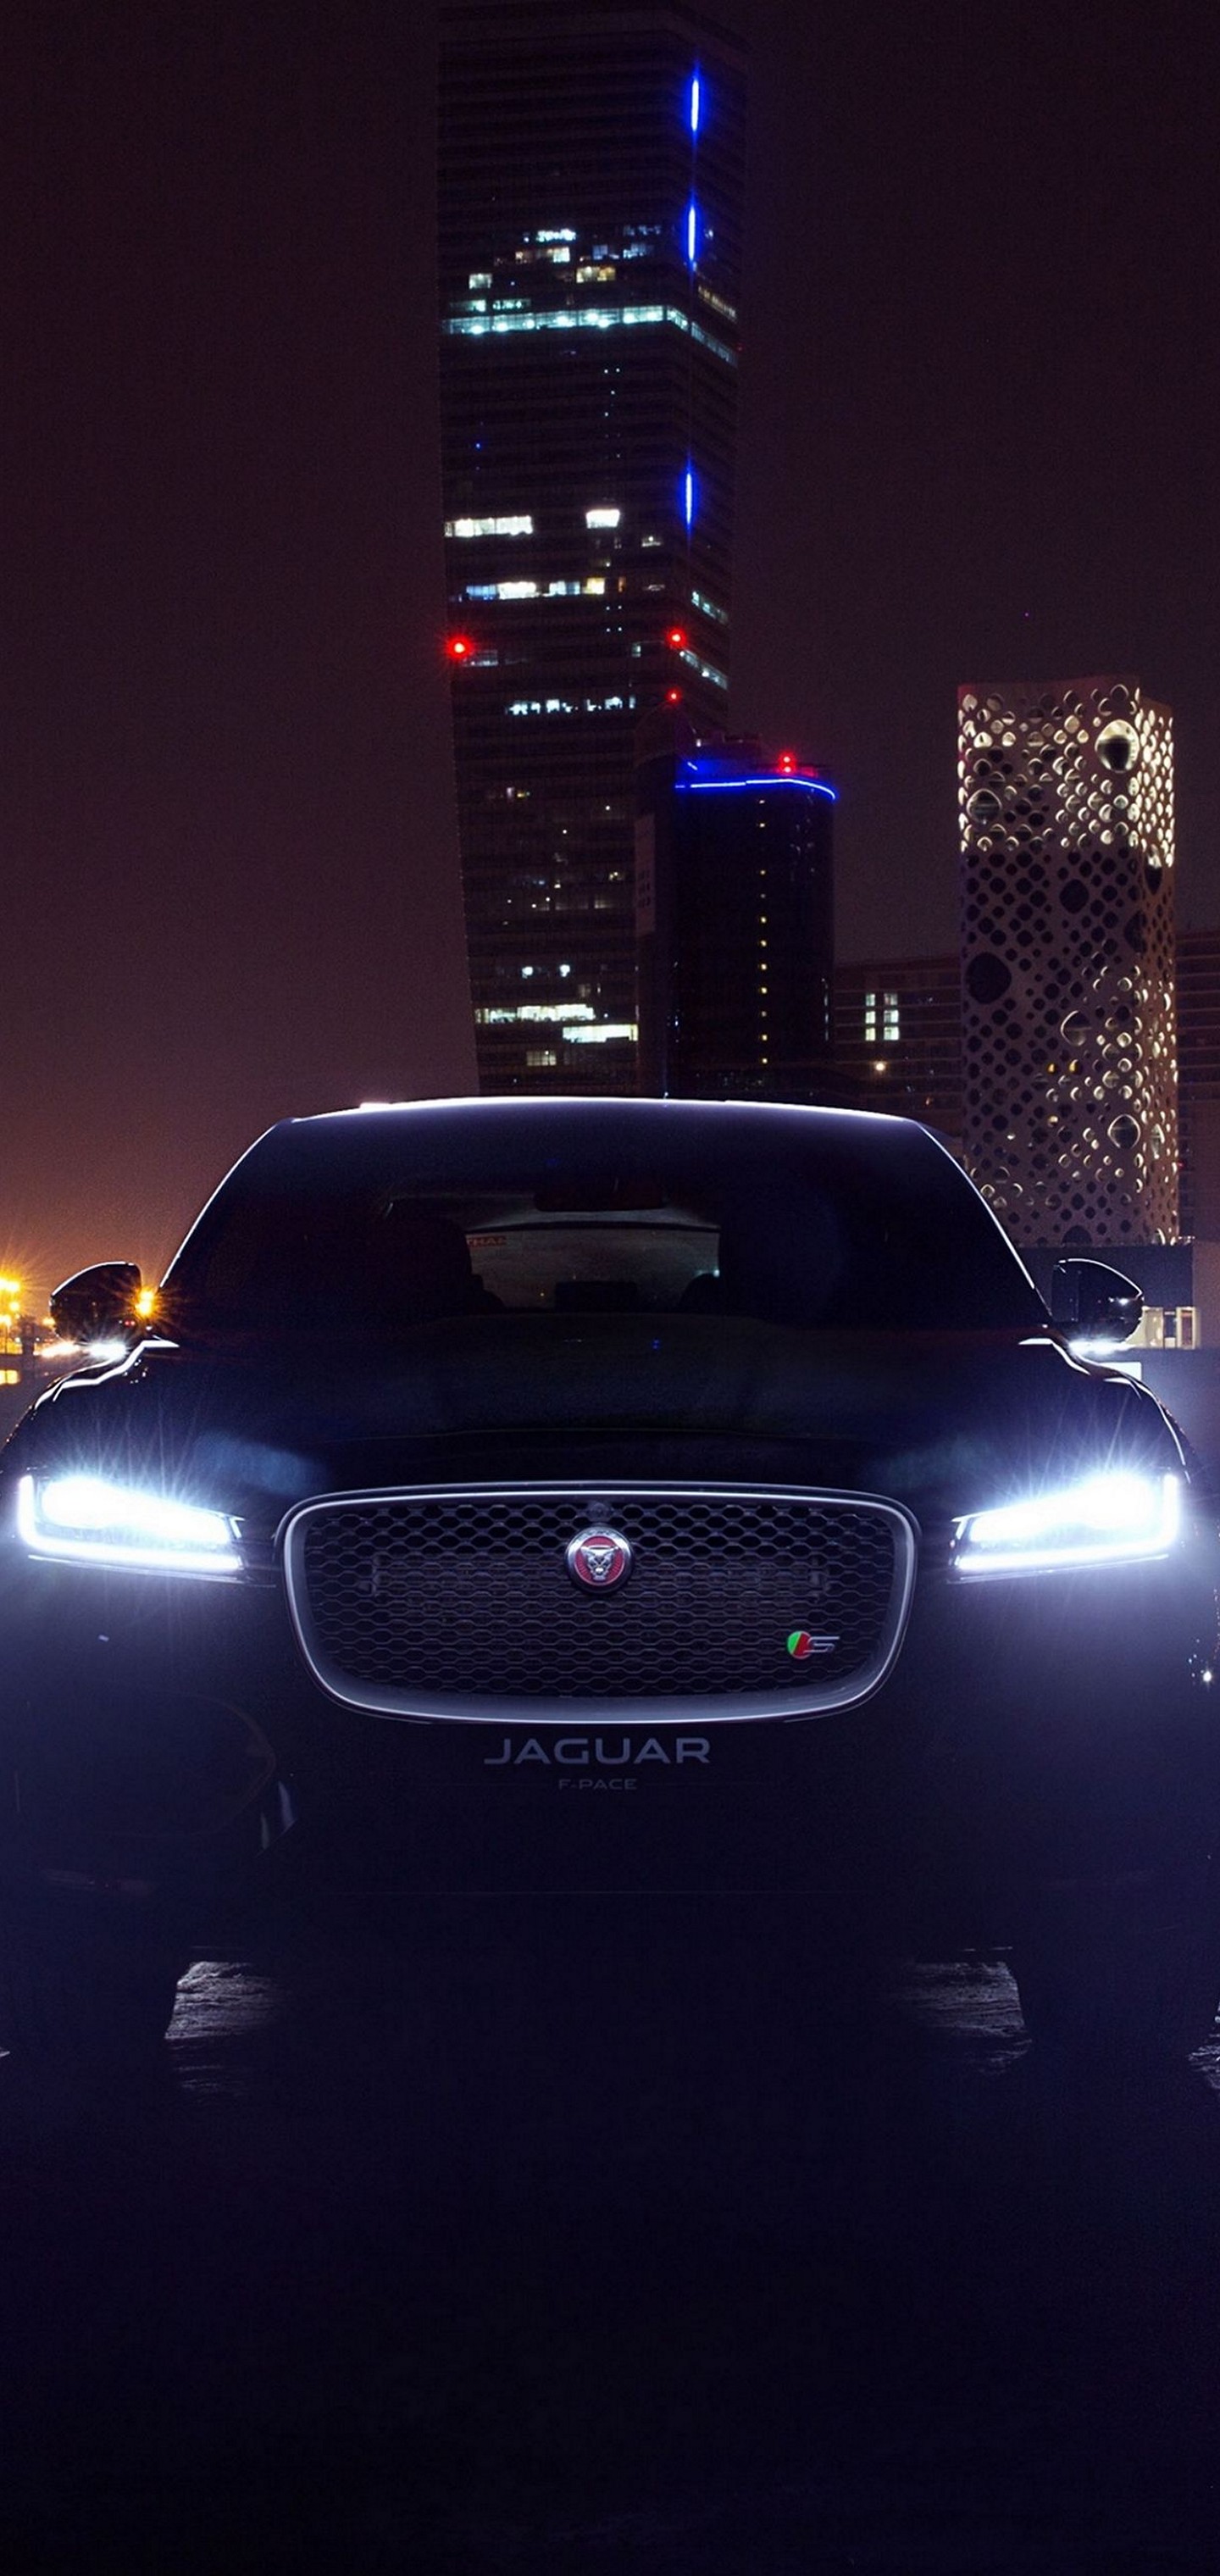 Jaguar Car 3d Wallpaper